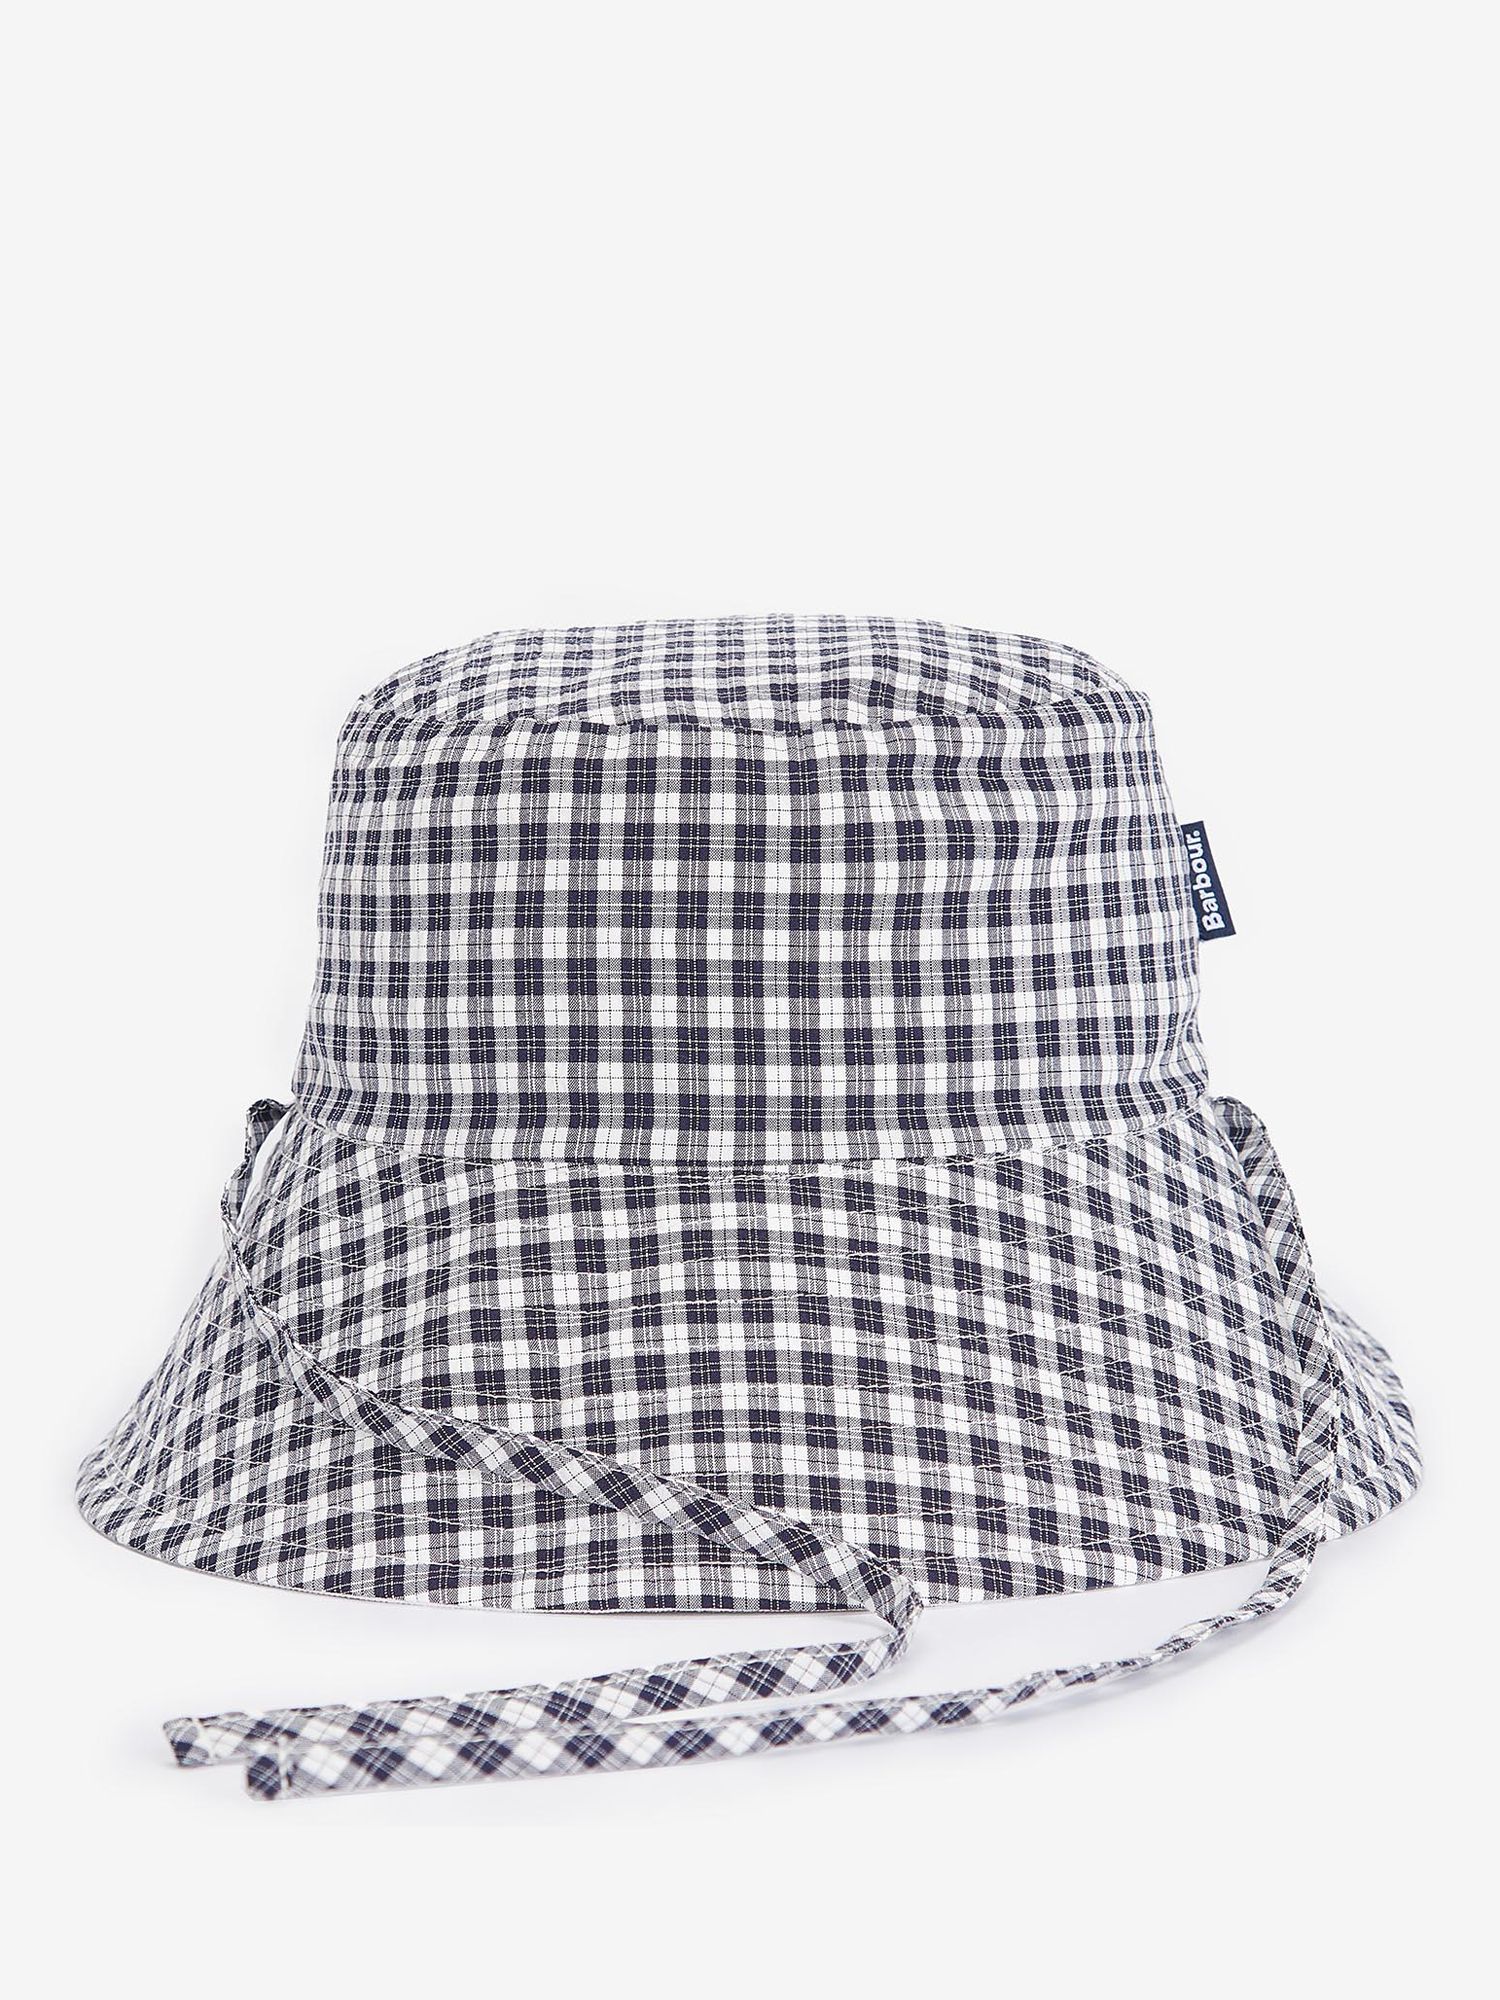 Barbour Kilburn Reversible Check Bucket Hat, White/Multi, M